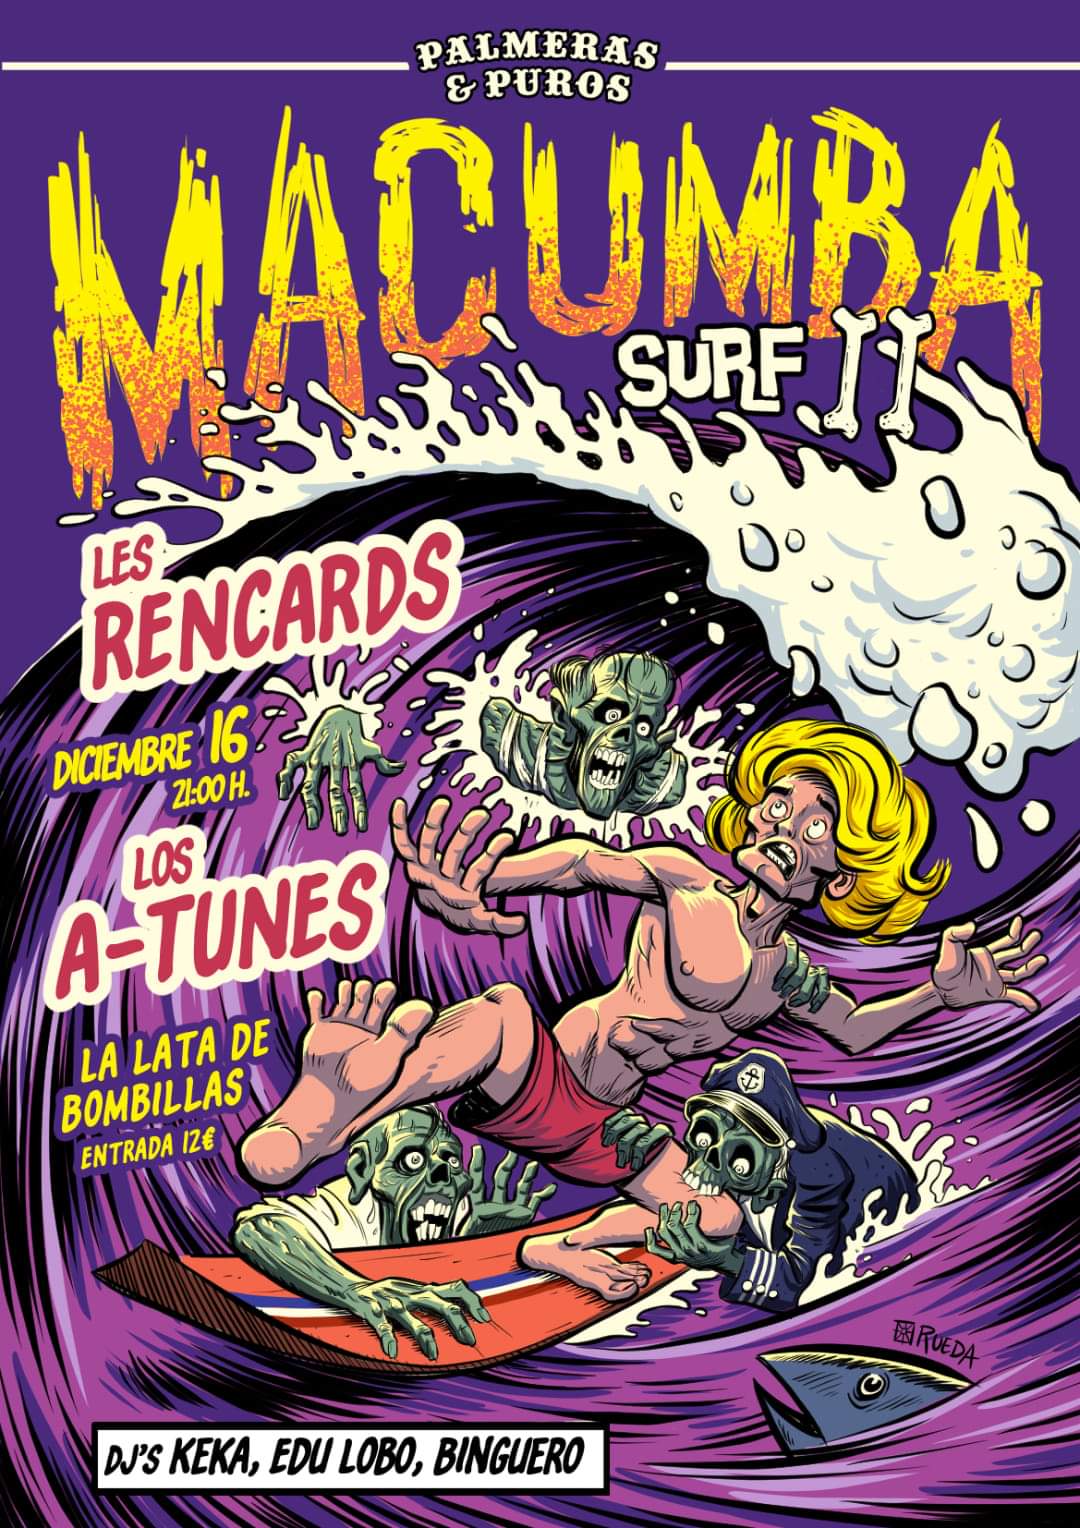 Cartel del concierto Macumba Surf II organizado por el fanzine Palmeras y Puros